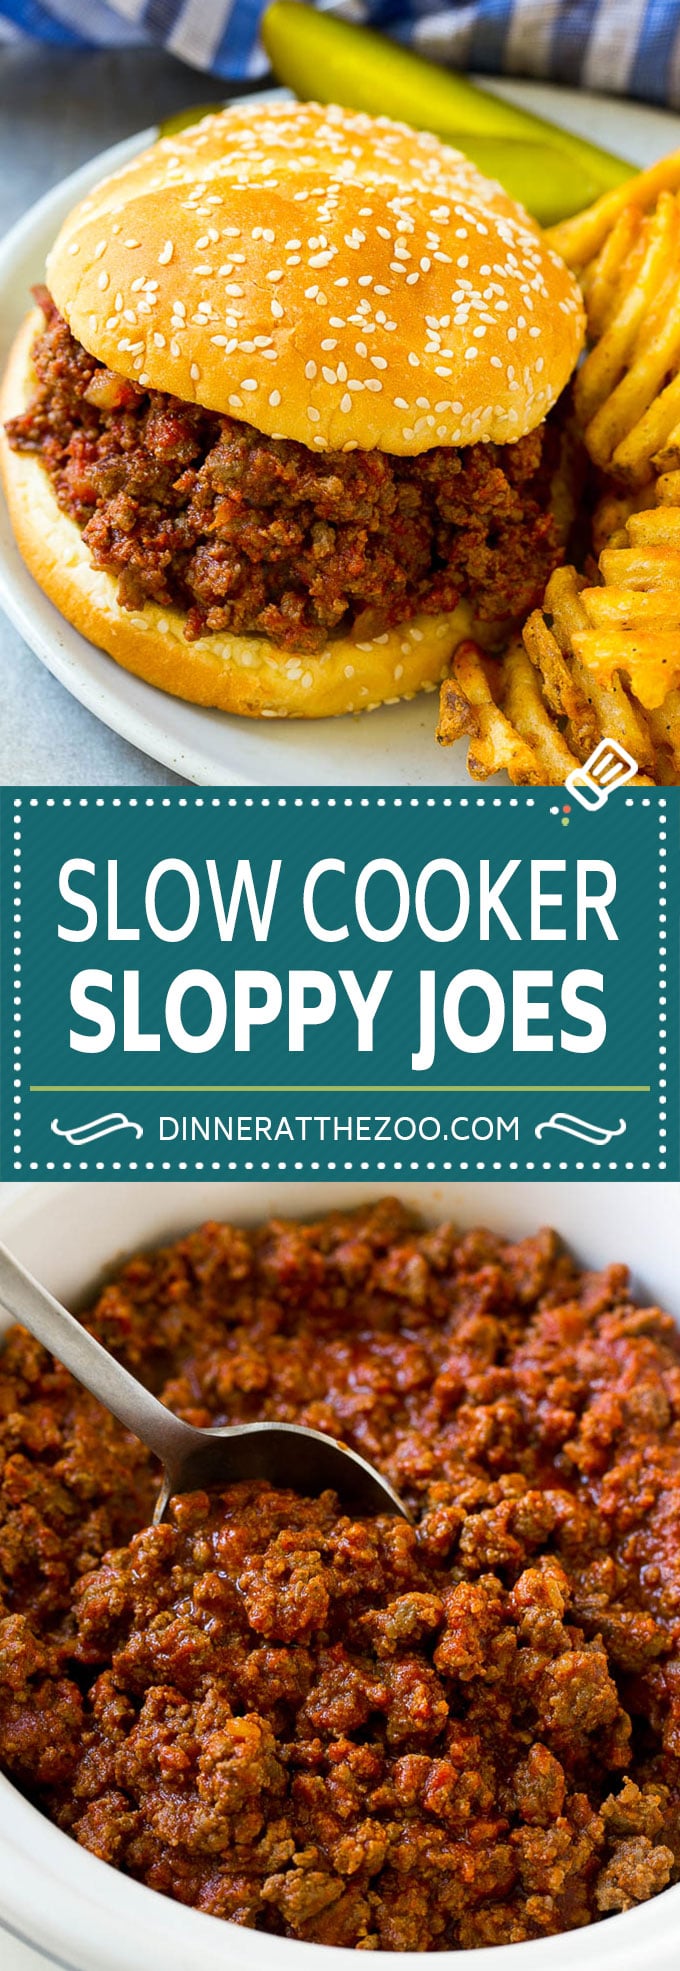 Slow Cooker Sloppy Joes Recipe | Crock Pot Sloppy Joes | Homemade Sloppy Joes #beef #slowcooker #crockpot #sandwich #dinneratthezoo